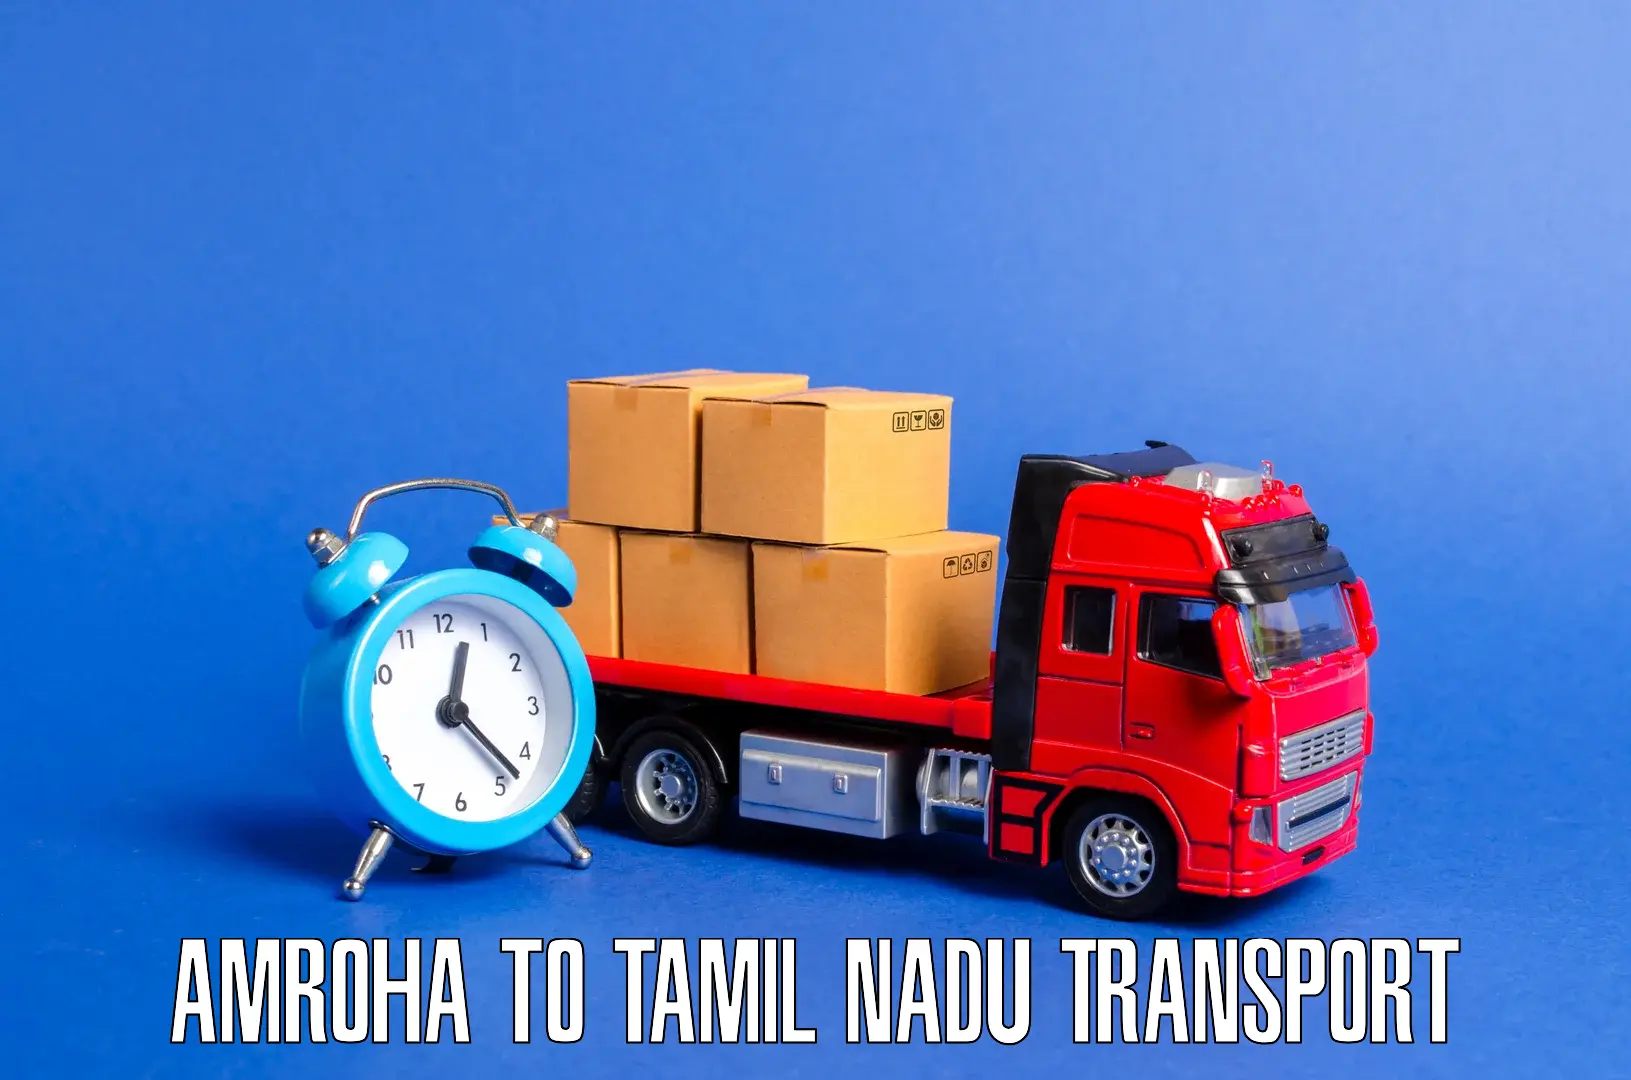 Furniture transport service Amroha to Gobichettipalayam